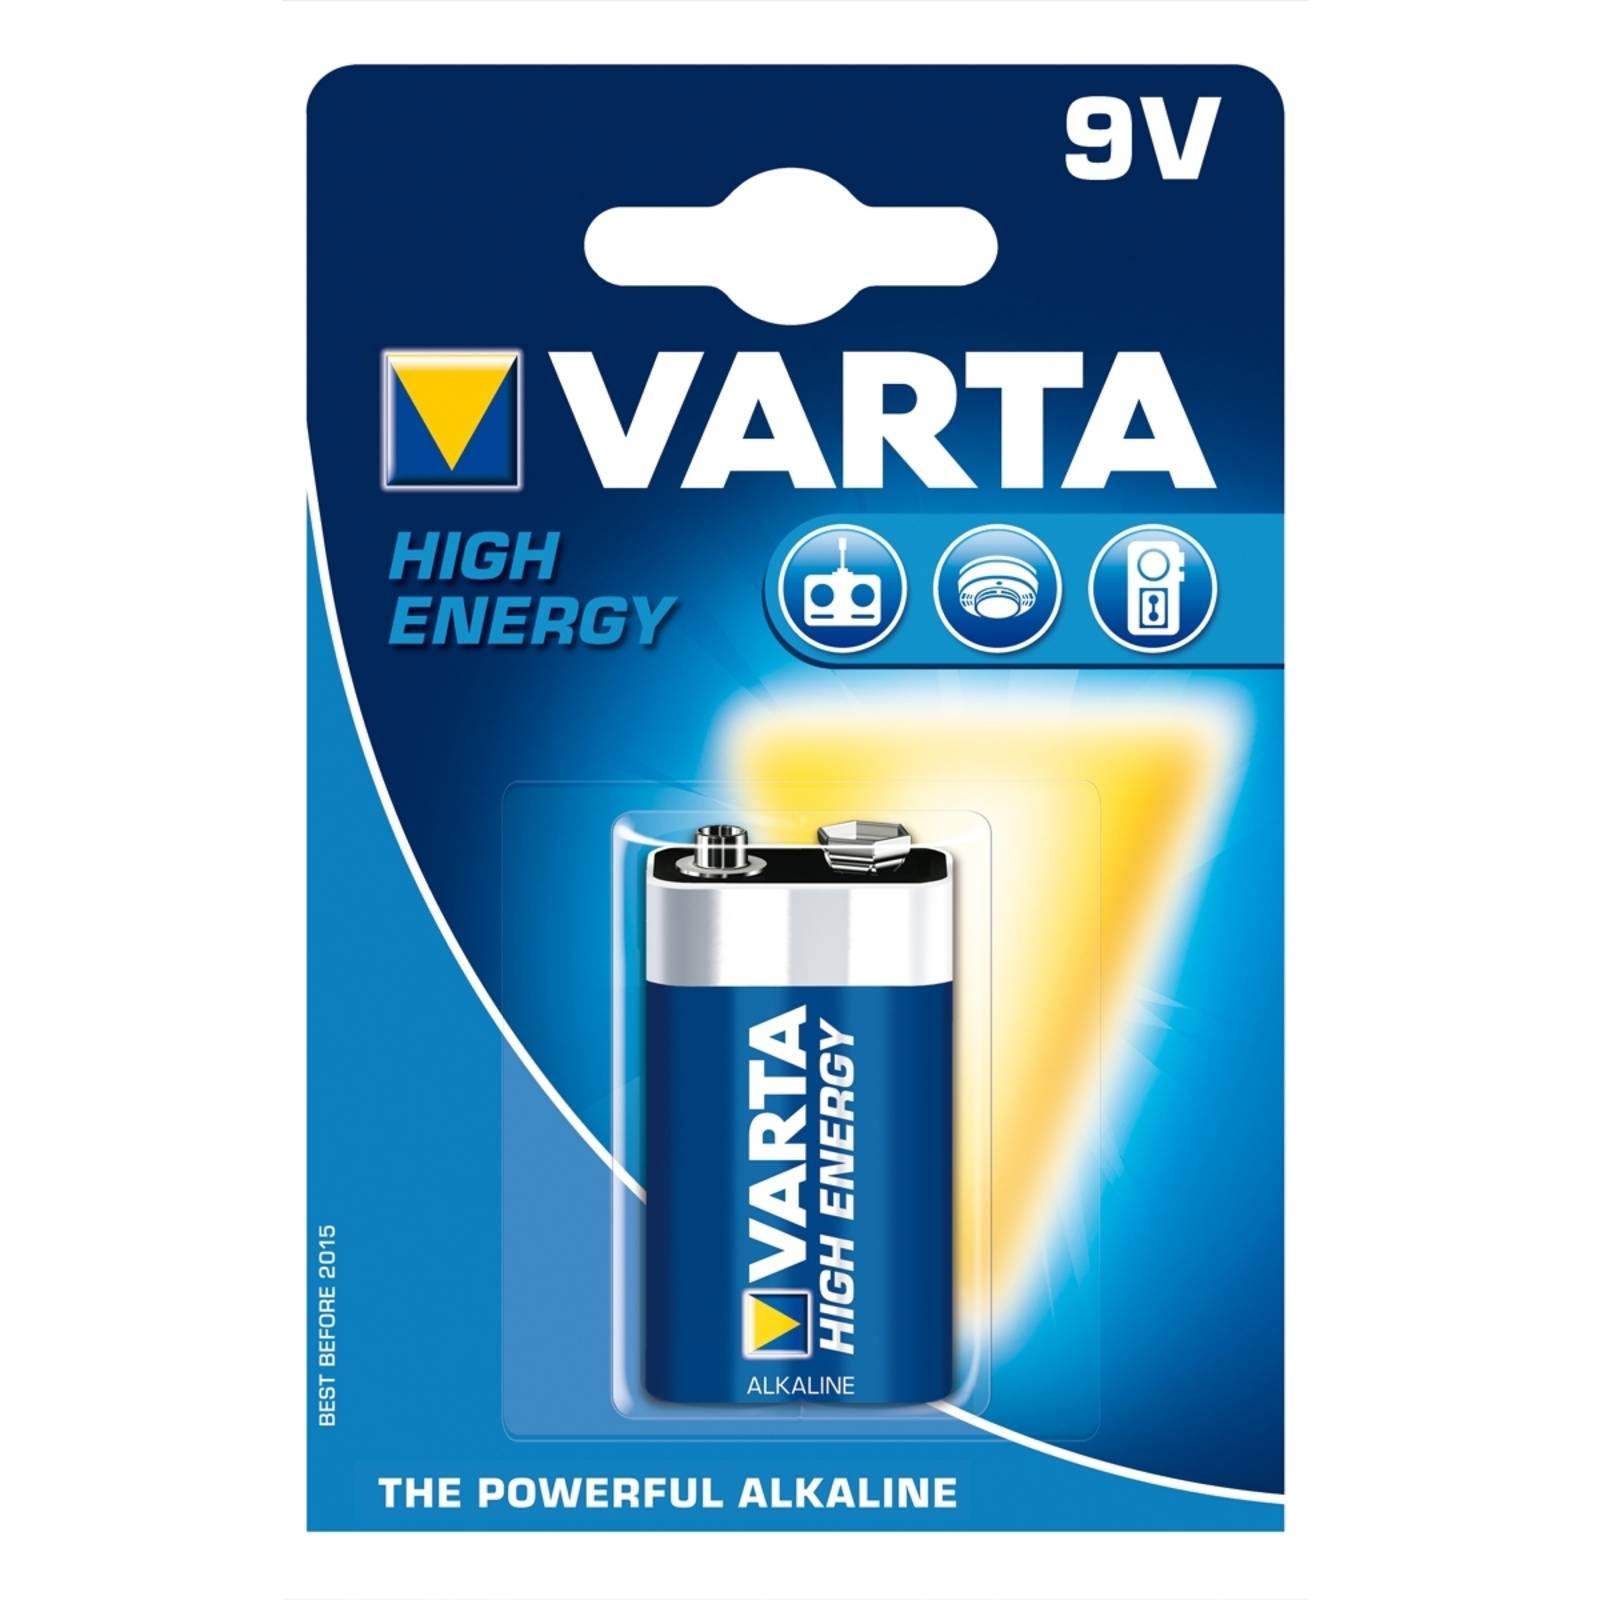 Varta 9V E-Block 4922 High Energy